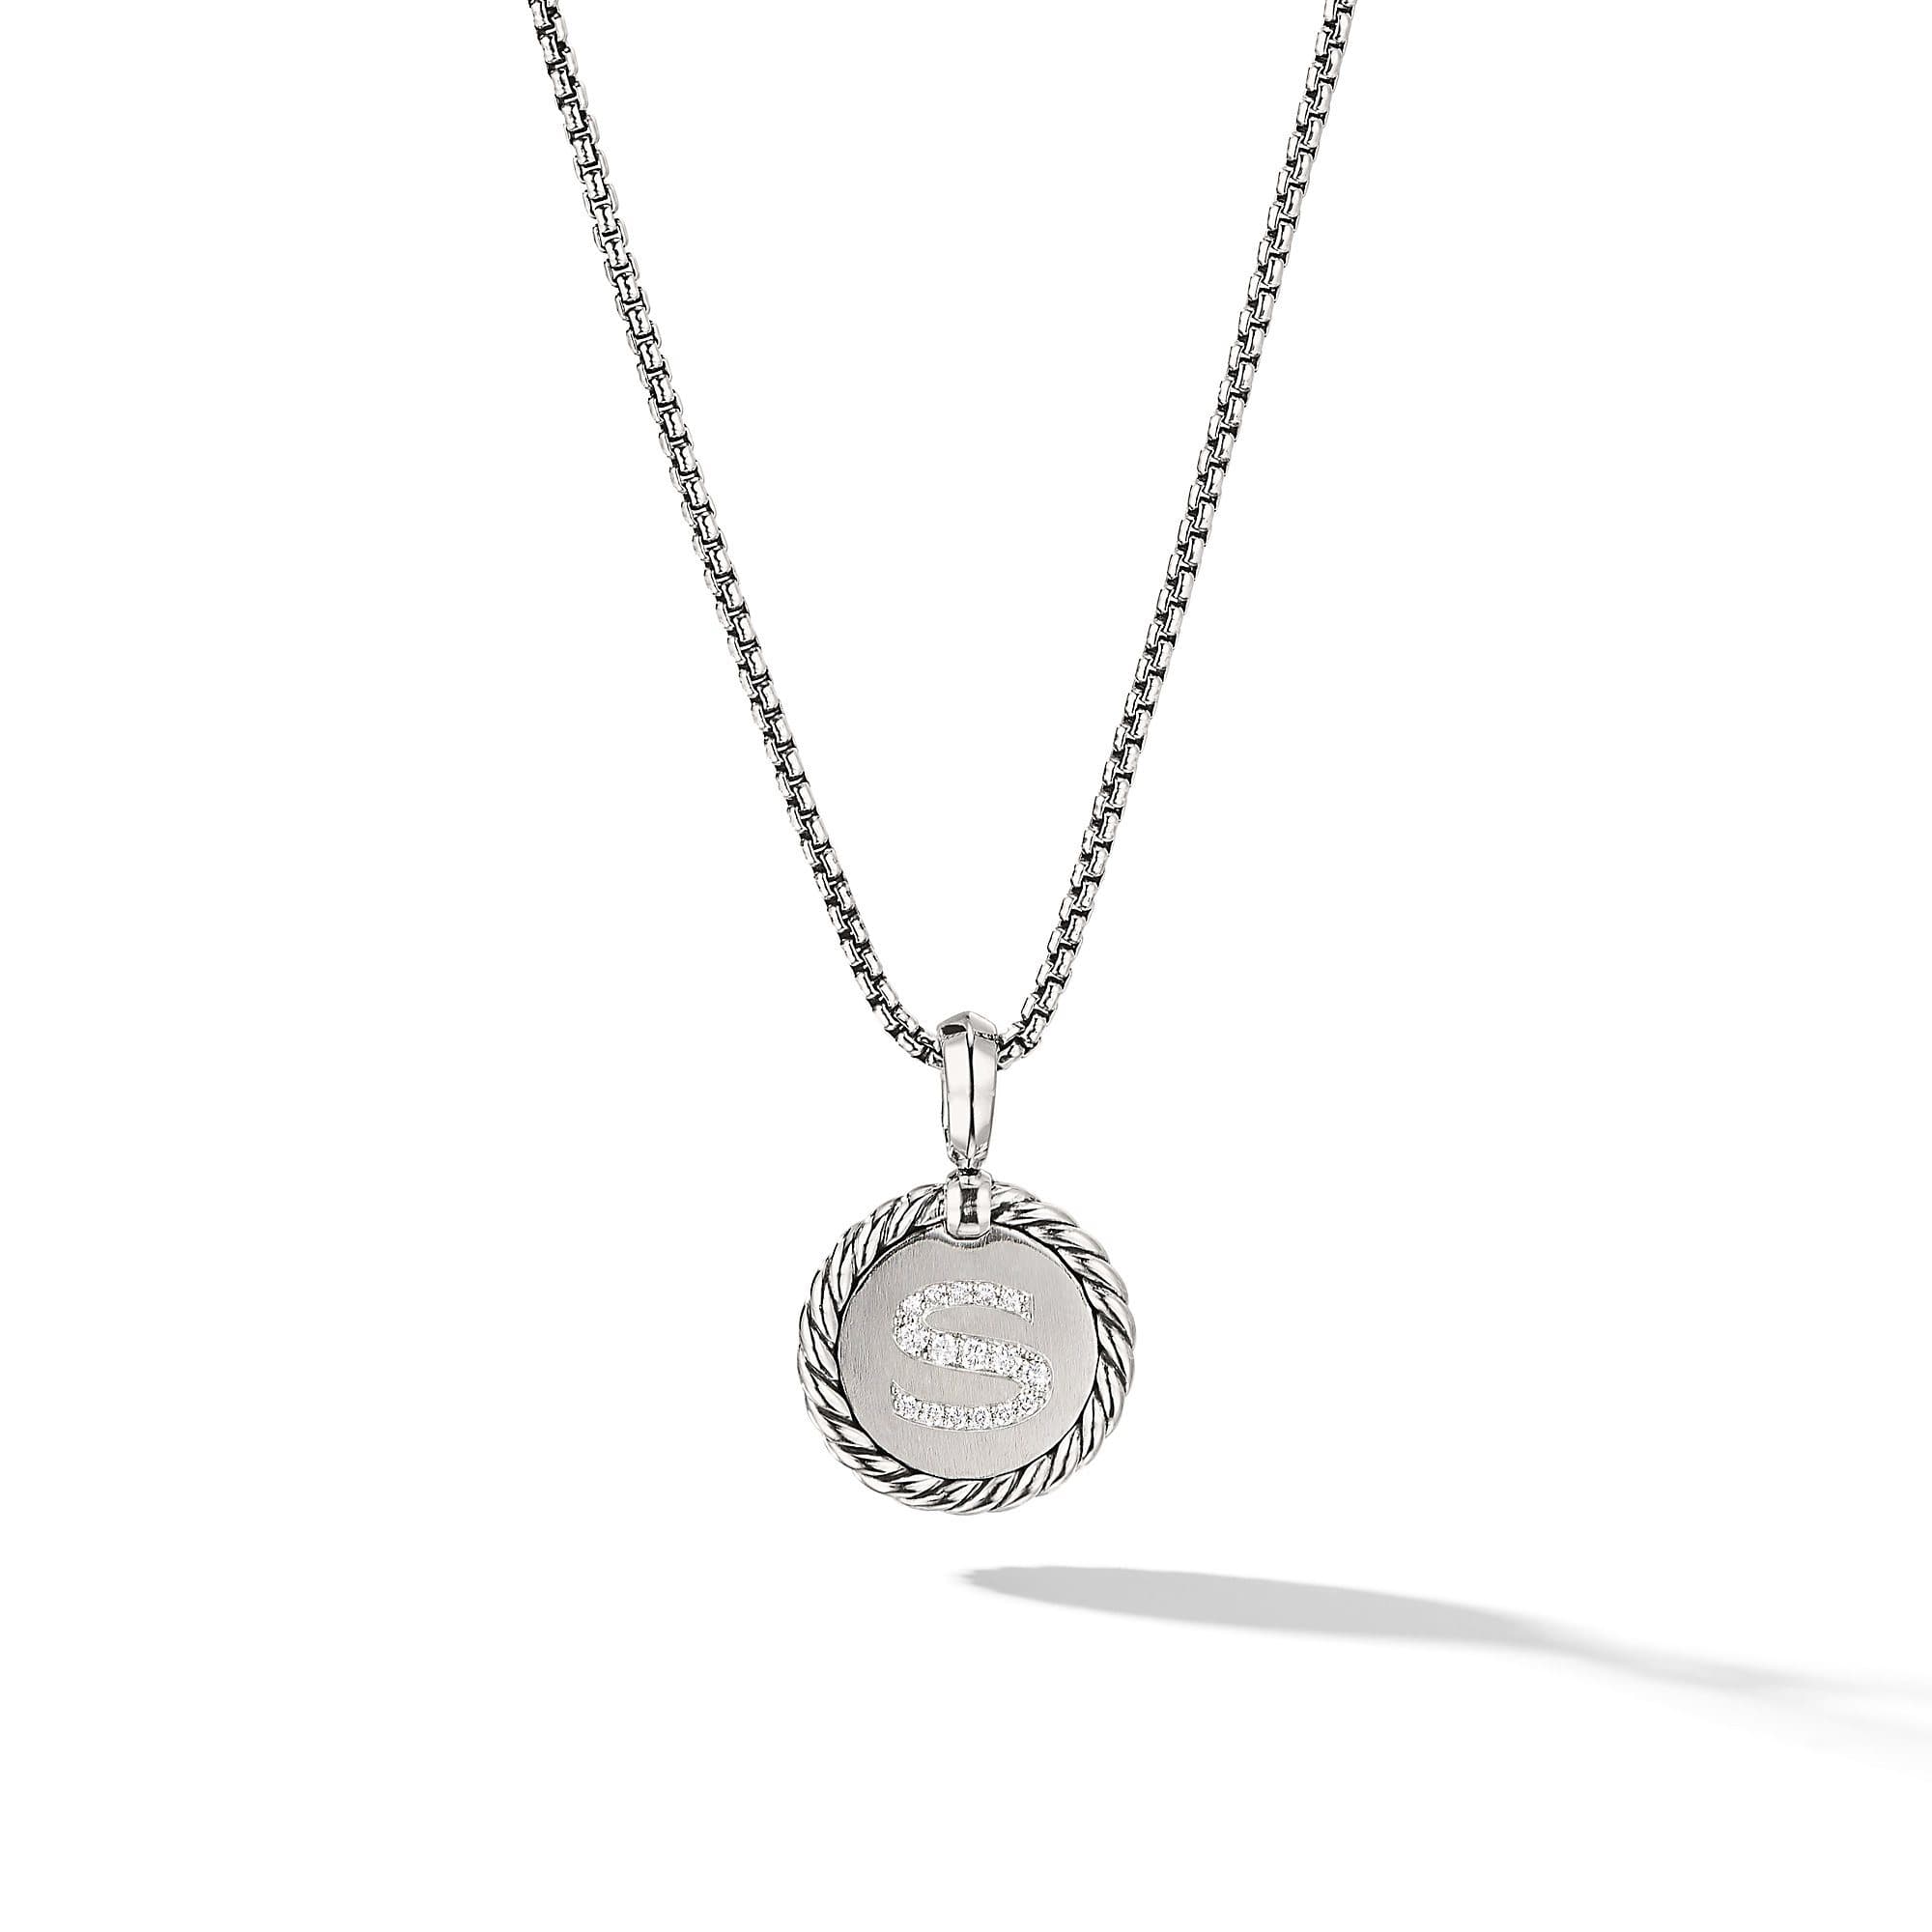 David Yurman S initial Charm Necklace with Diamonds